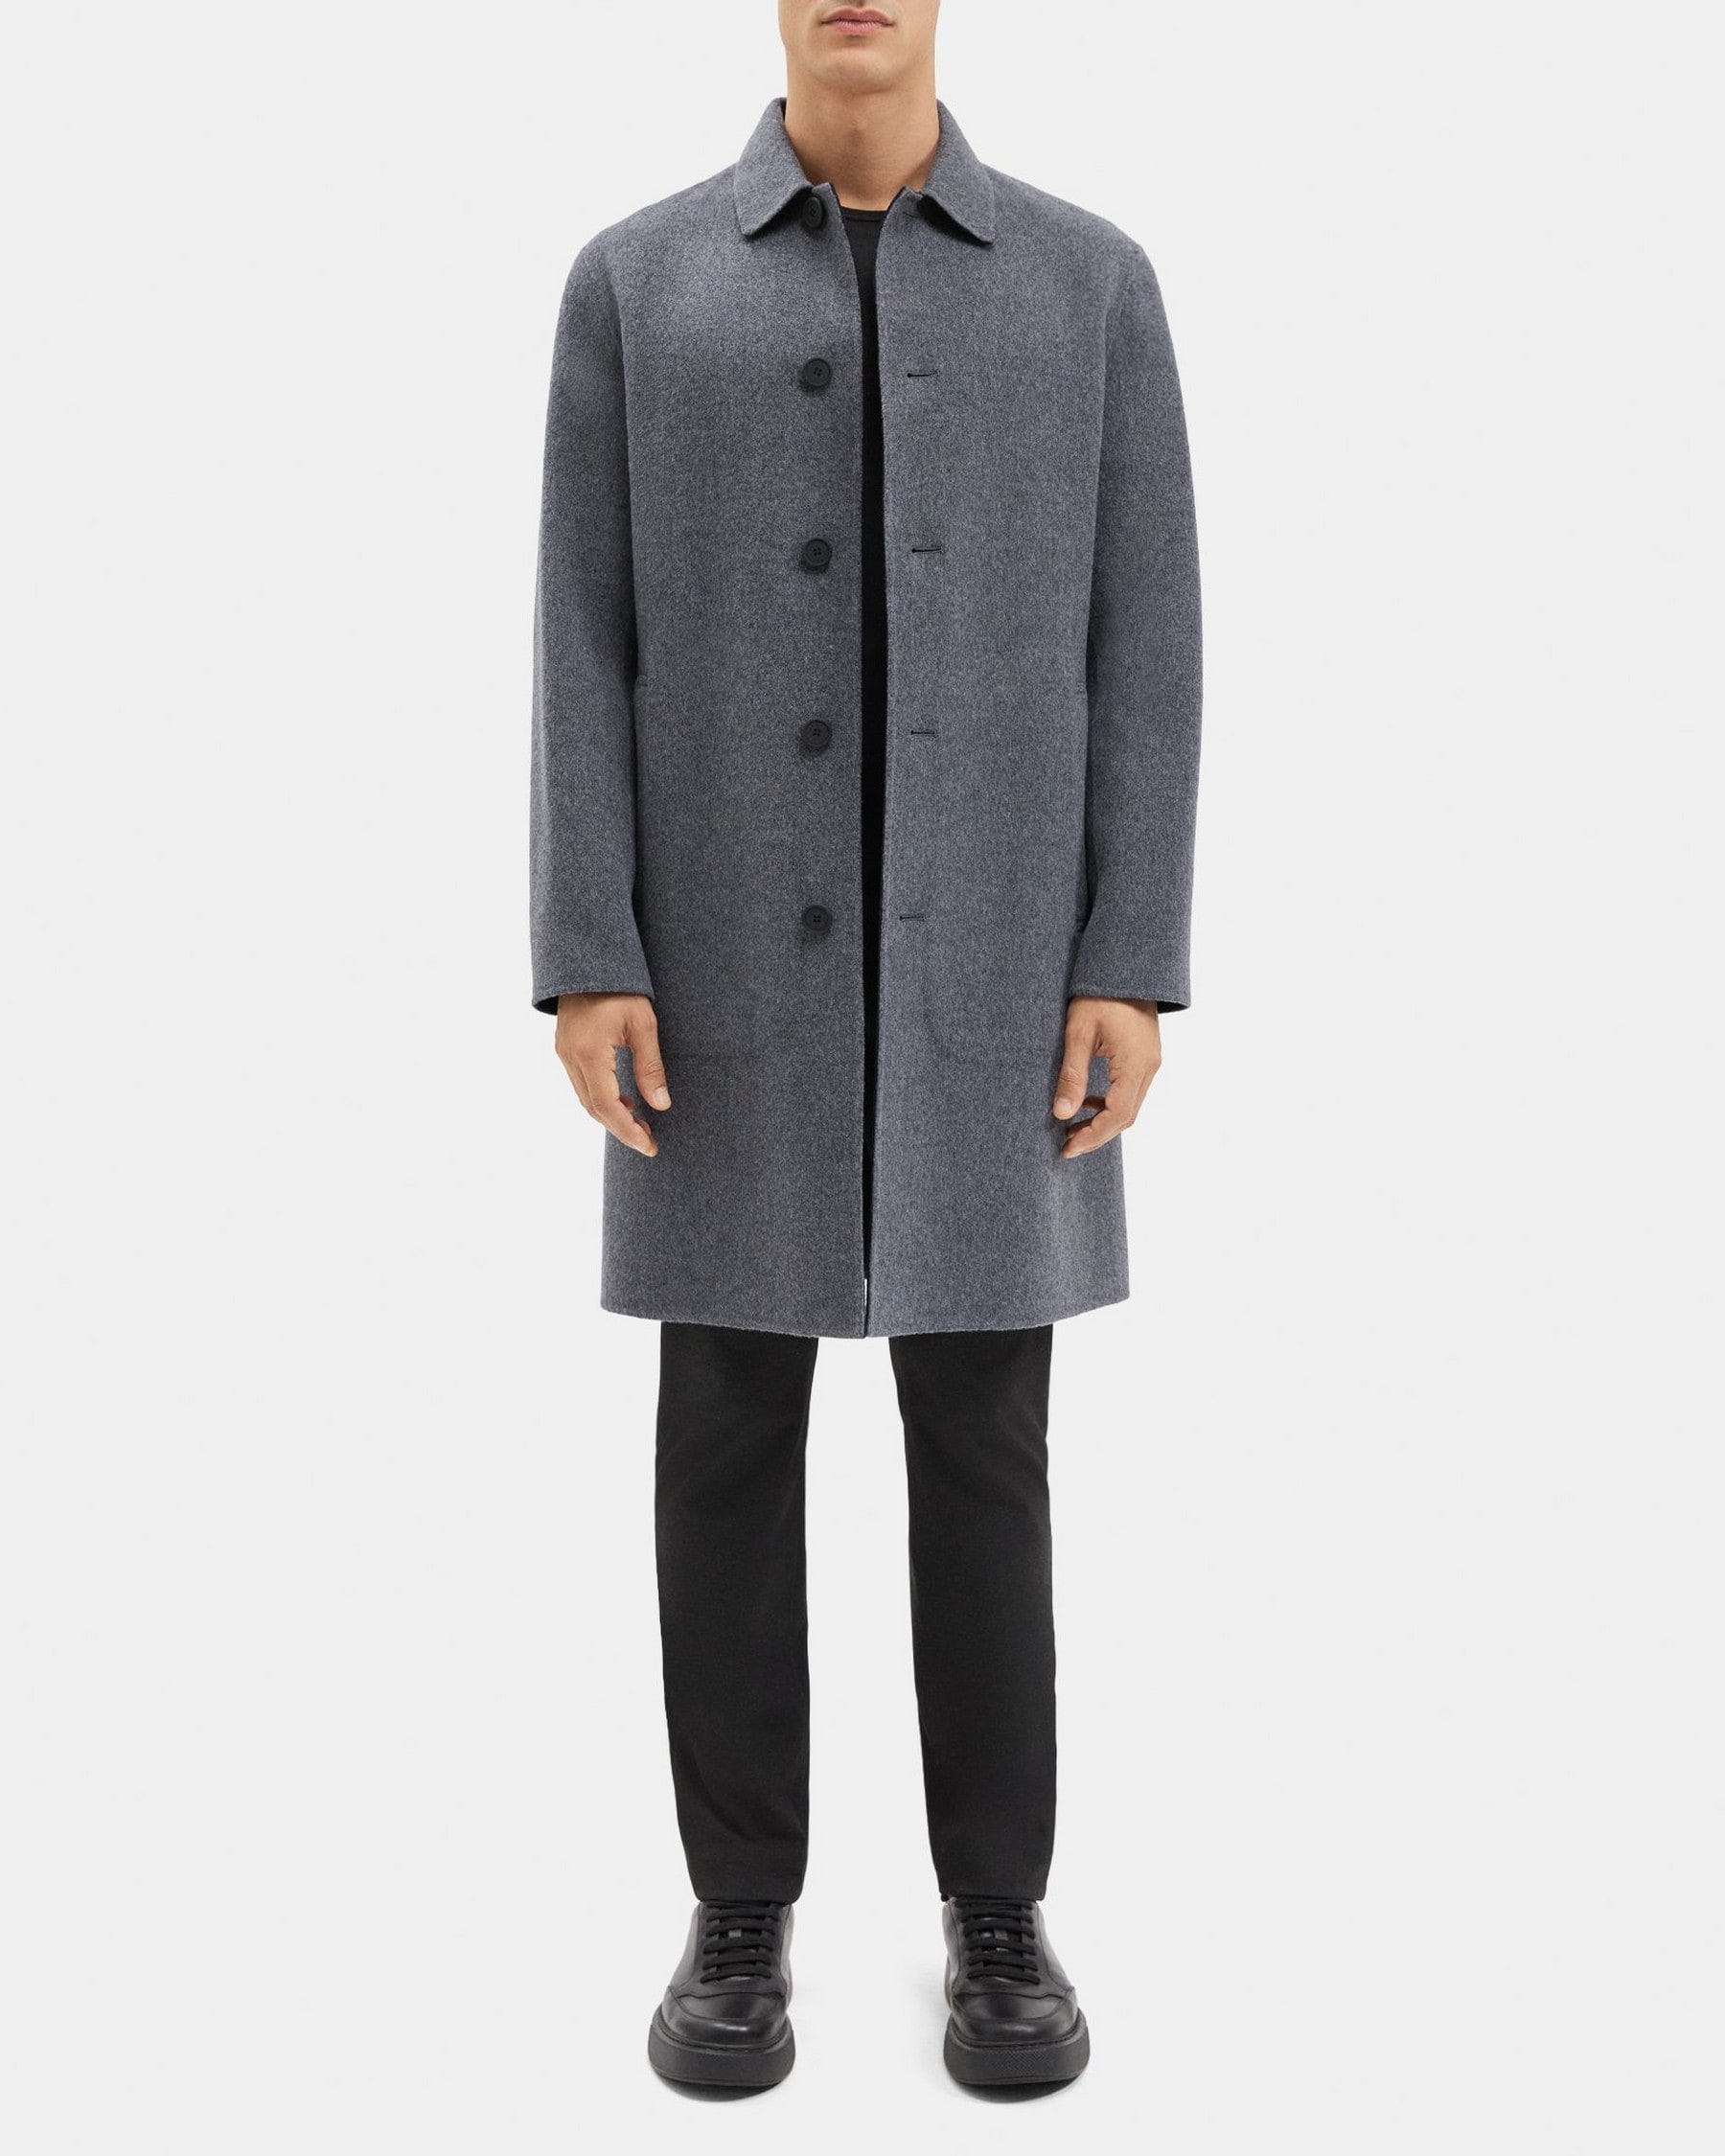 띠어리 Theory Caban Coat in Double-Face Wool-Cashmere,DARK GREY MELANGE/NAVY